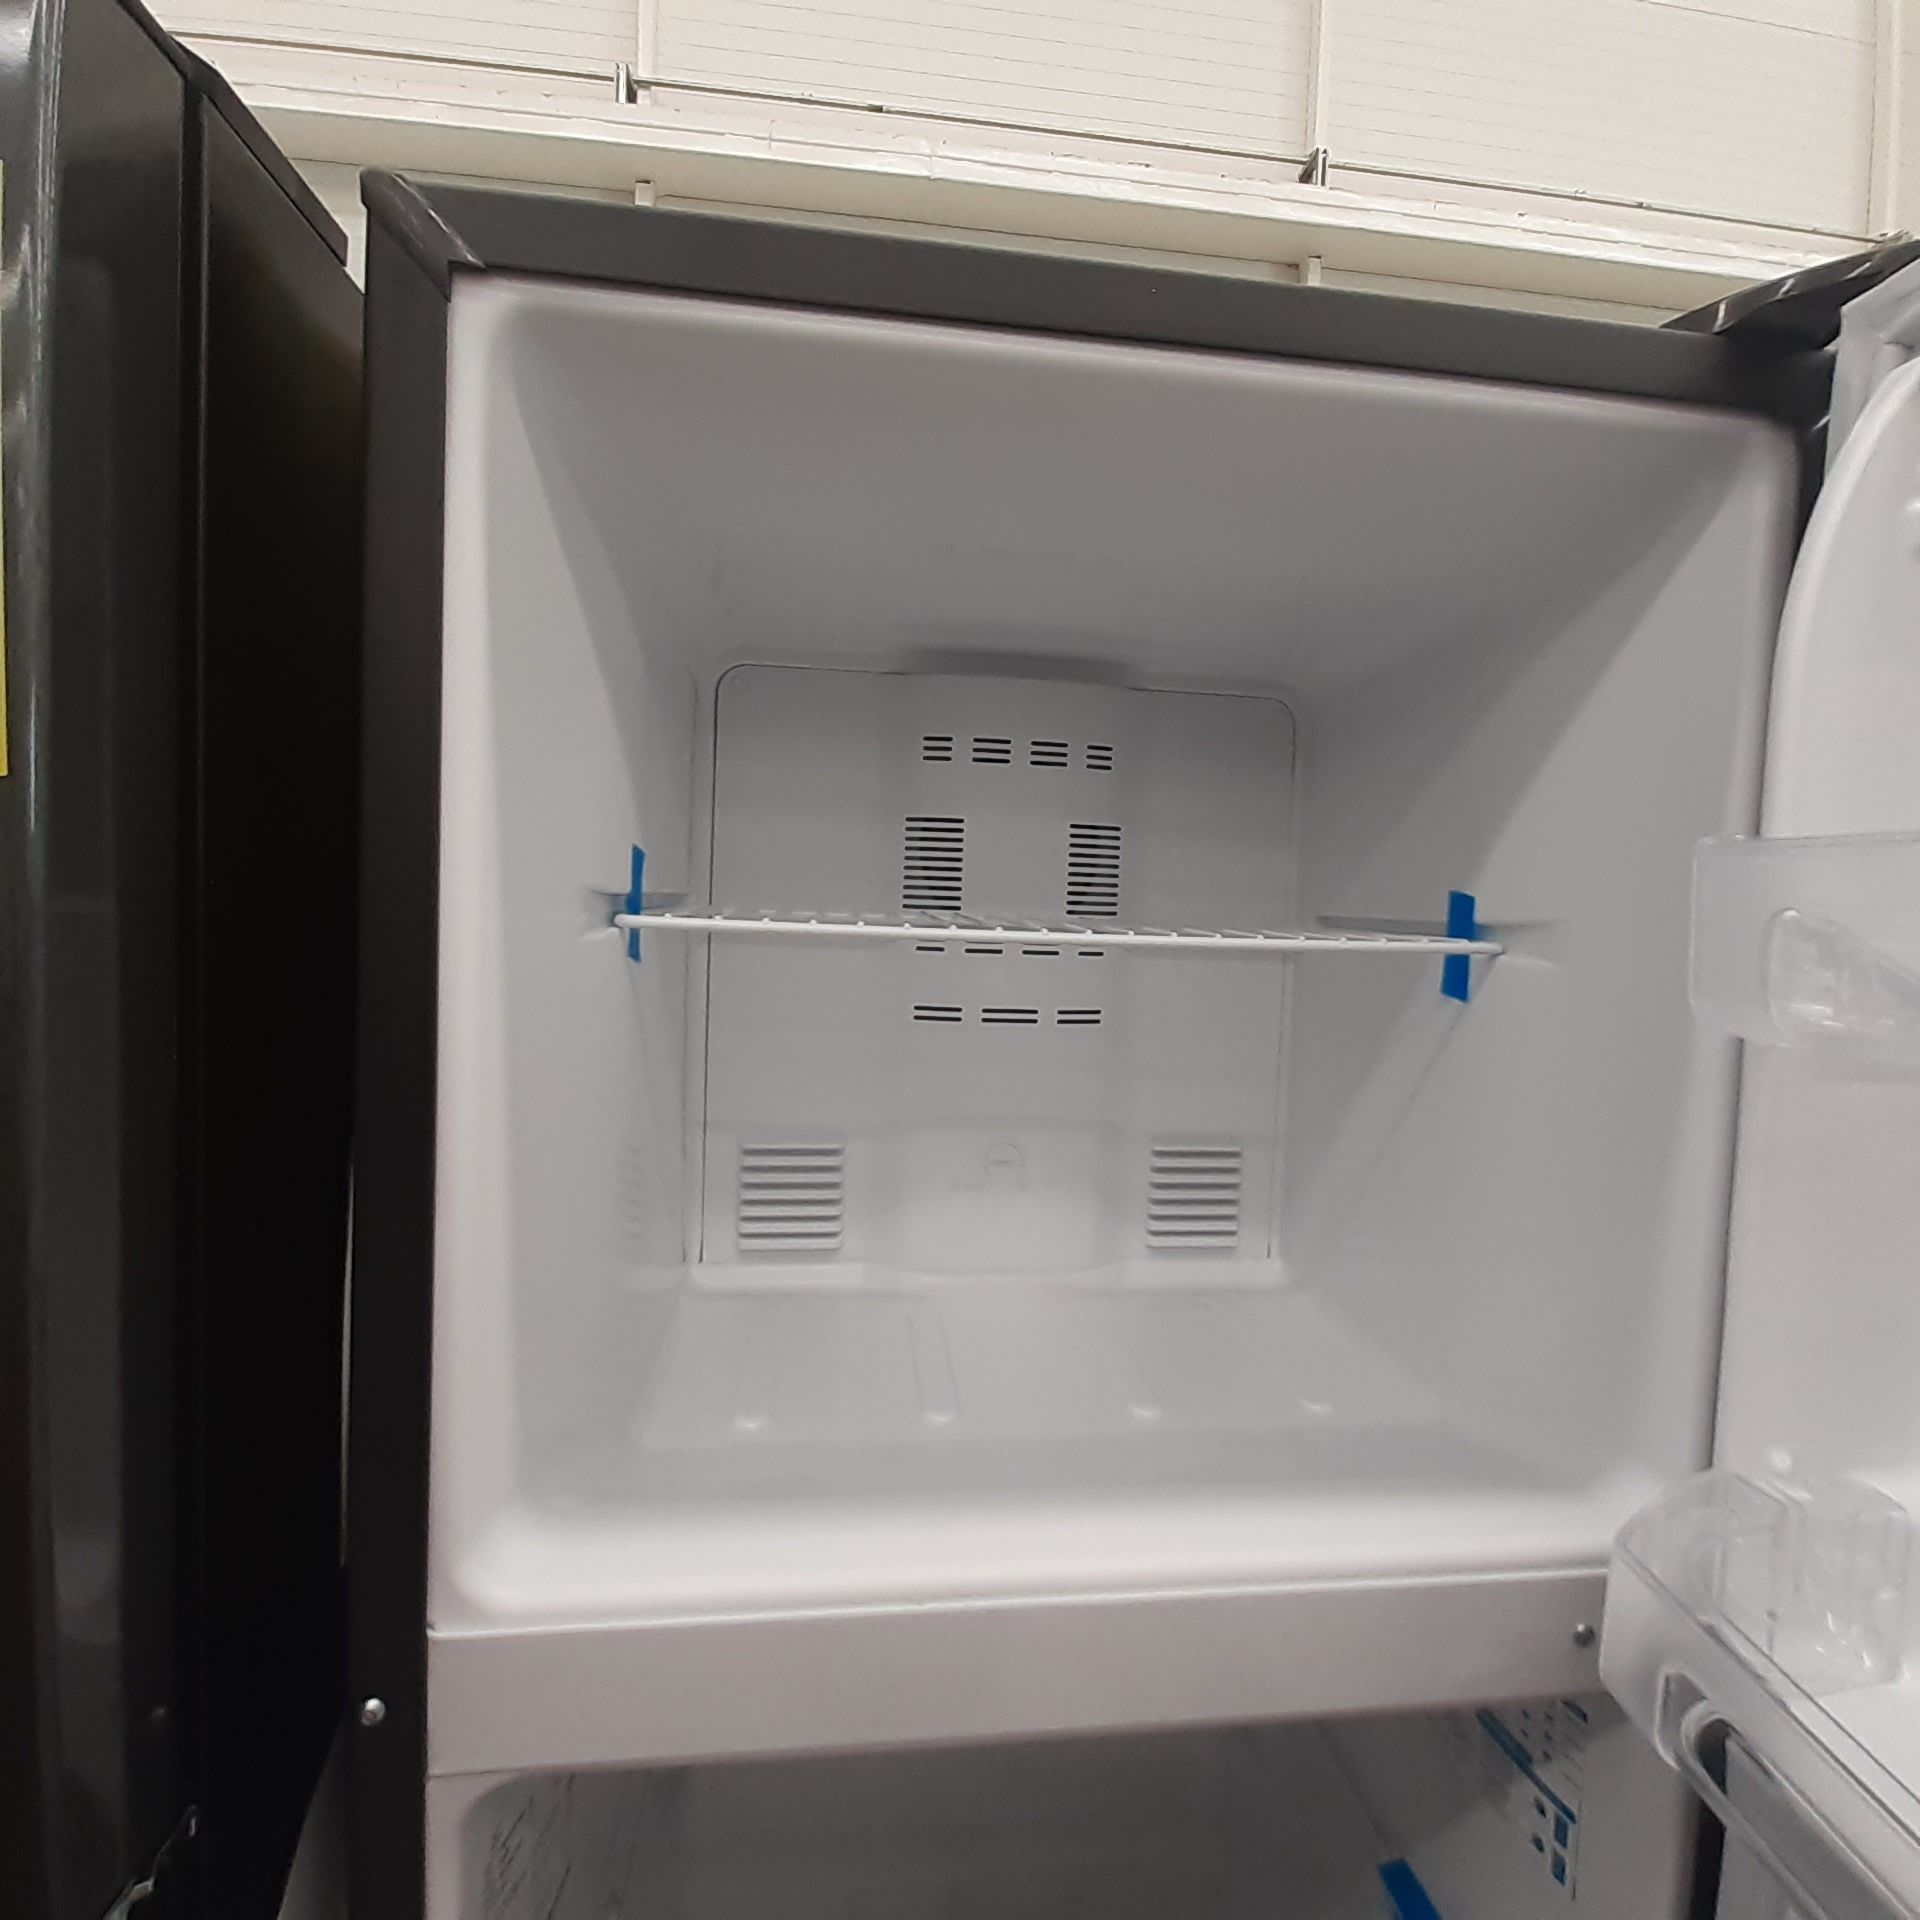 Lote De 2 Refrigeradores Contiene: 1 Refrigerador Marca Mabe, 1 Refrigerador Marca Hisense, Distinto - Image 6 of 14